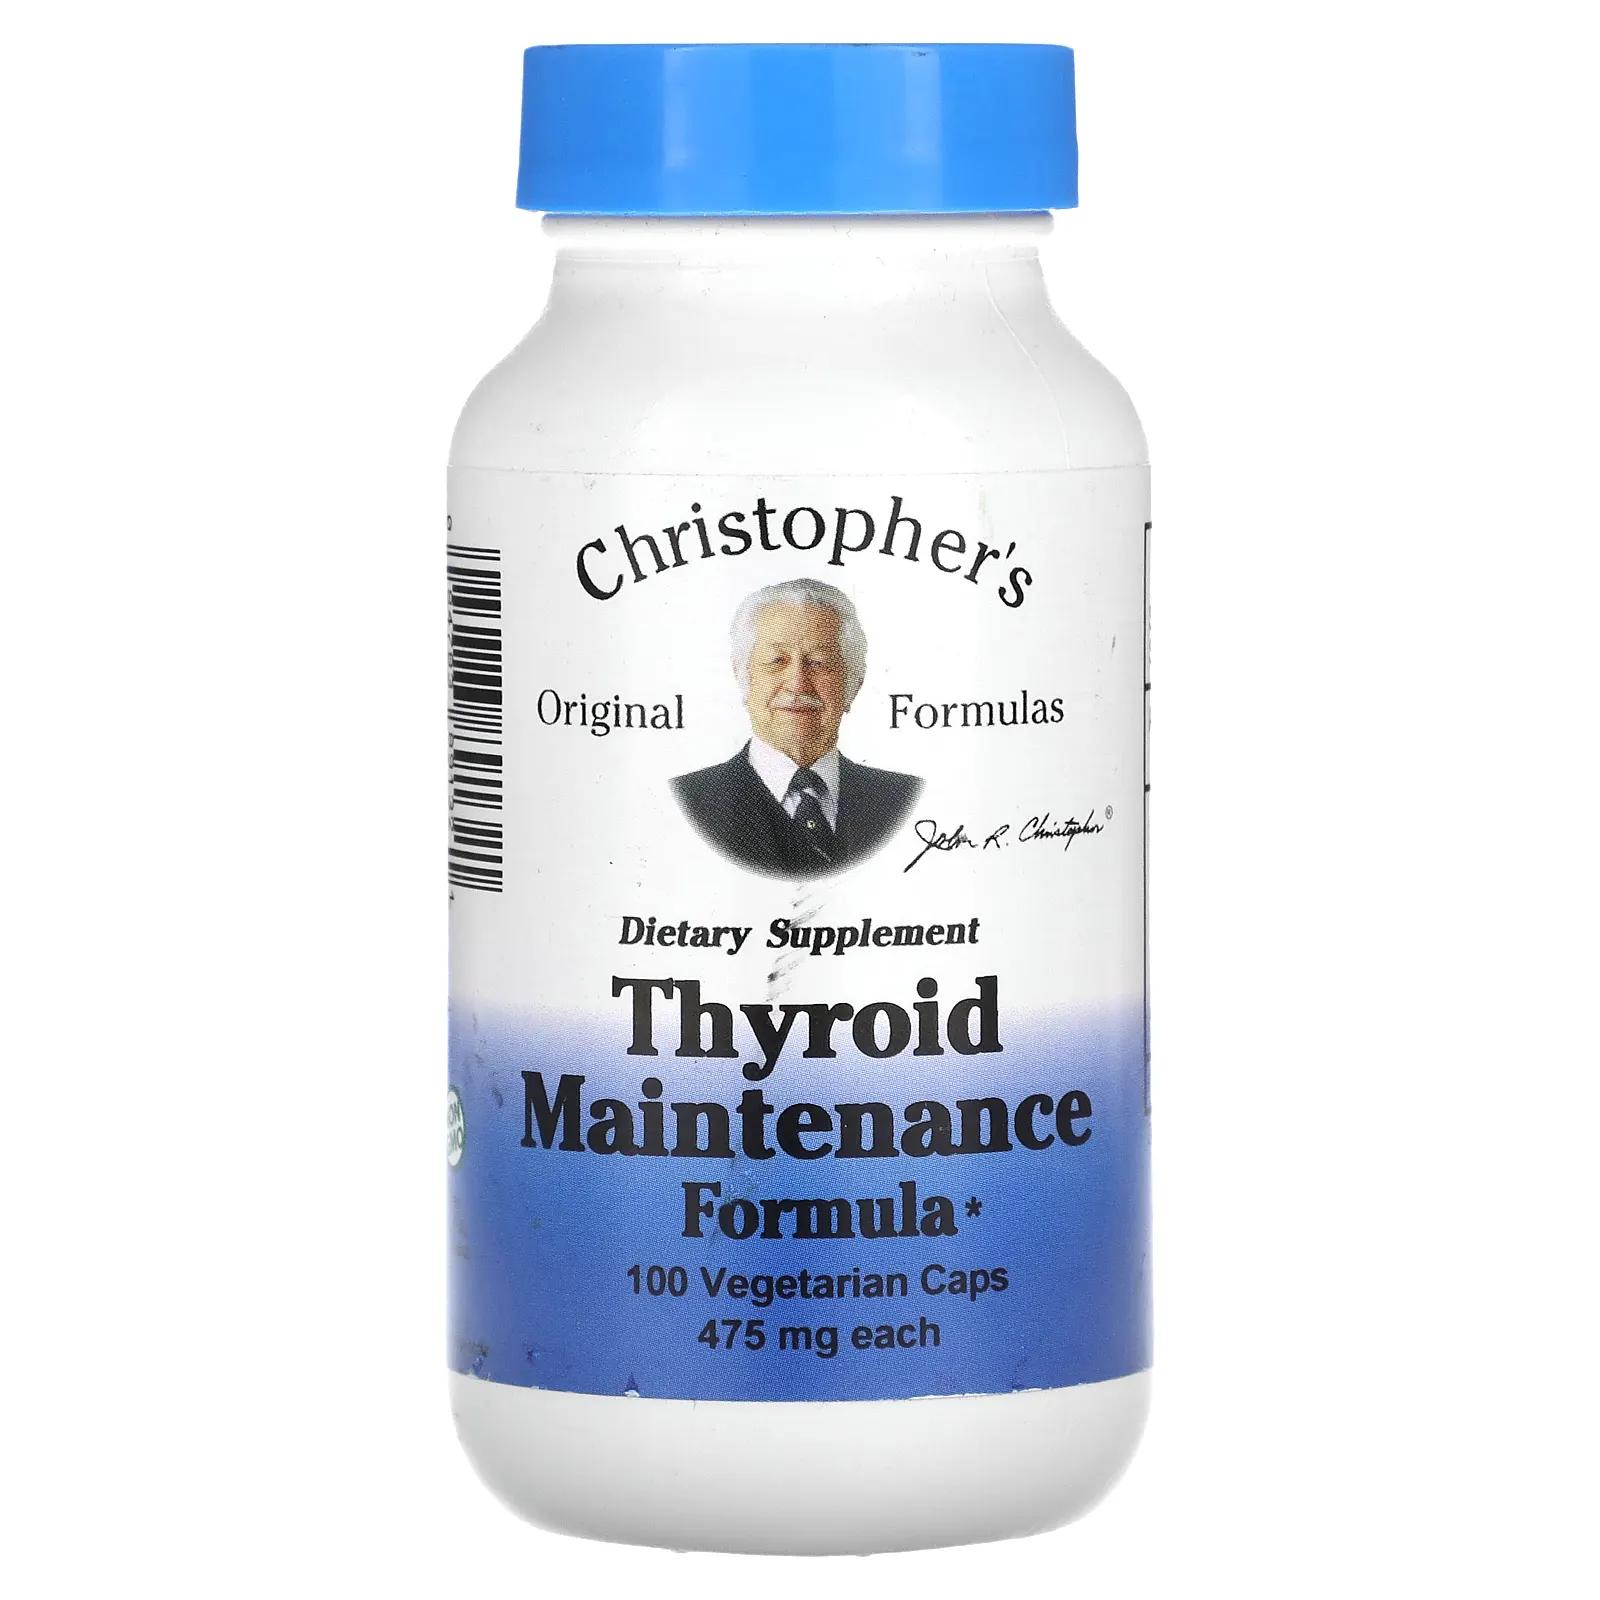 Christopher's Original Formulas Профилактика для щитовидной железы 475 мг каждая 100 капсул в растительной оболочке christopher s original formulas косметический крем для лица 2 унции